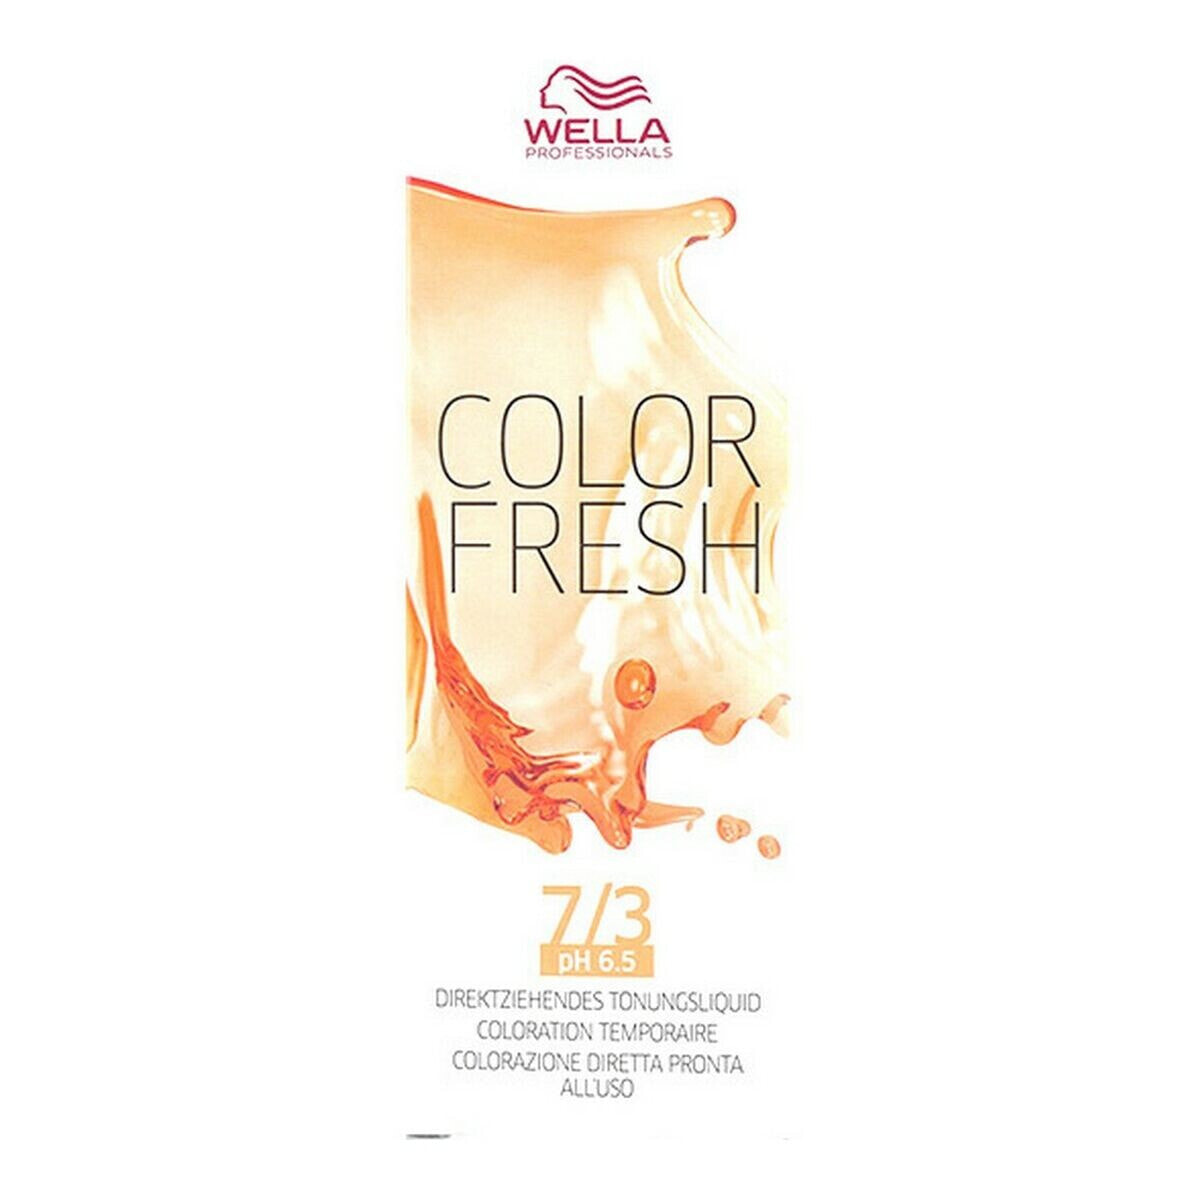 Semi-Permanent Tint Color Fresh Wella 4015600185732 Nº 7/3 (75 ml)